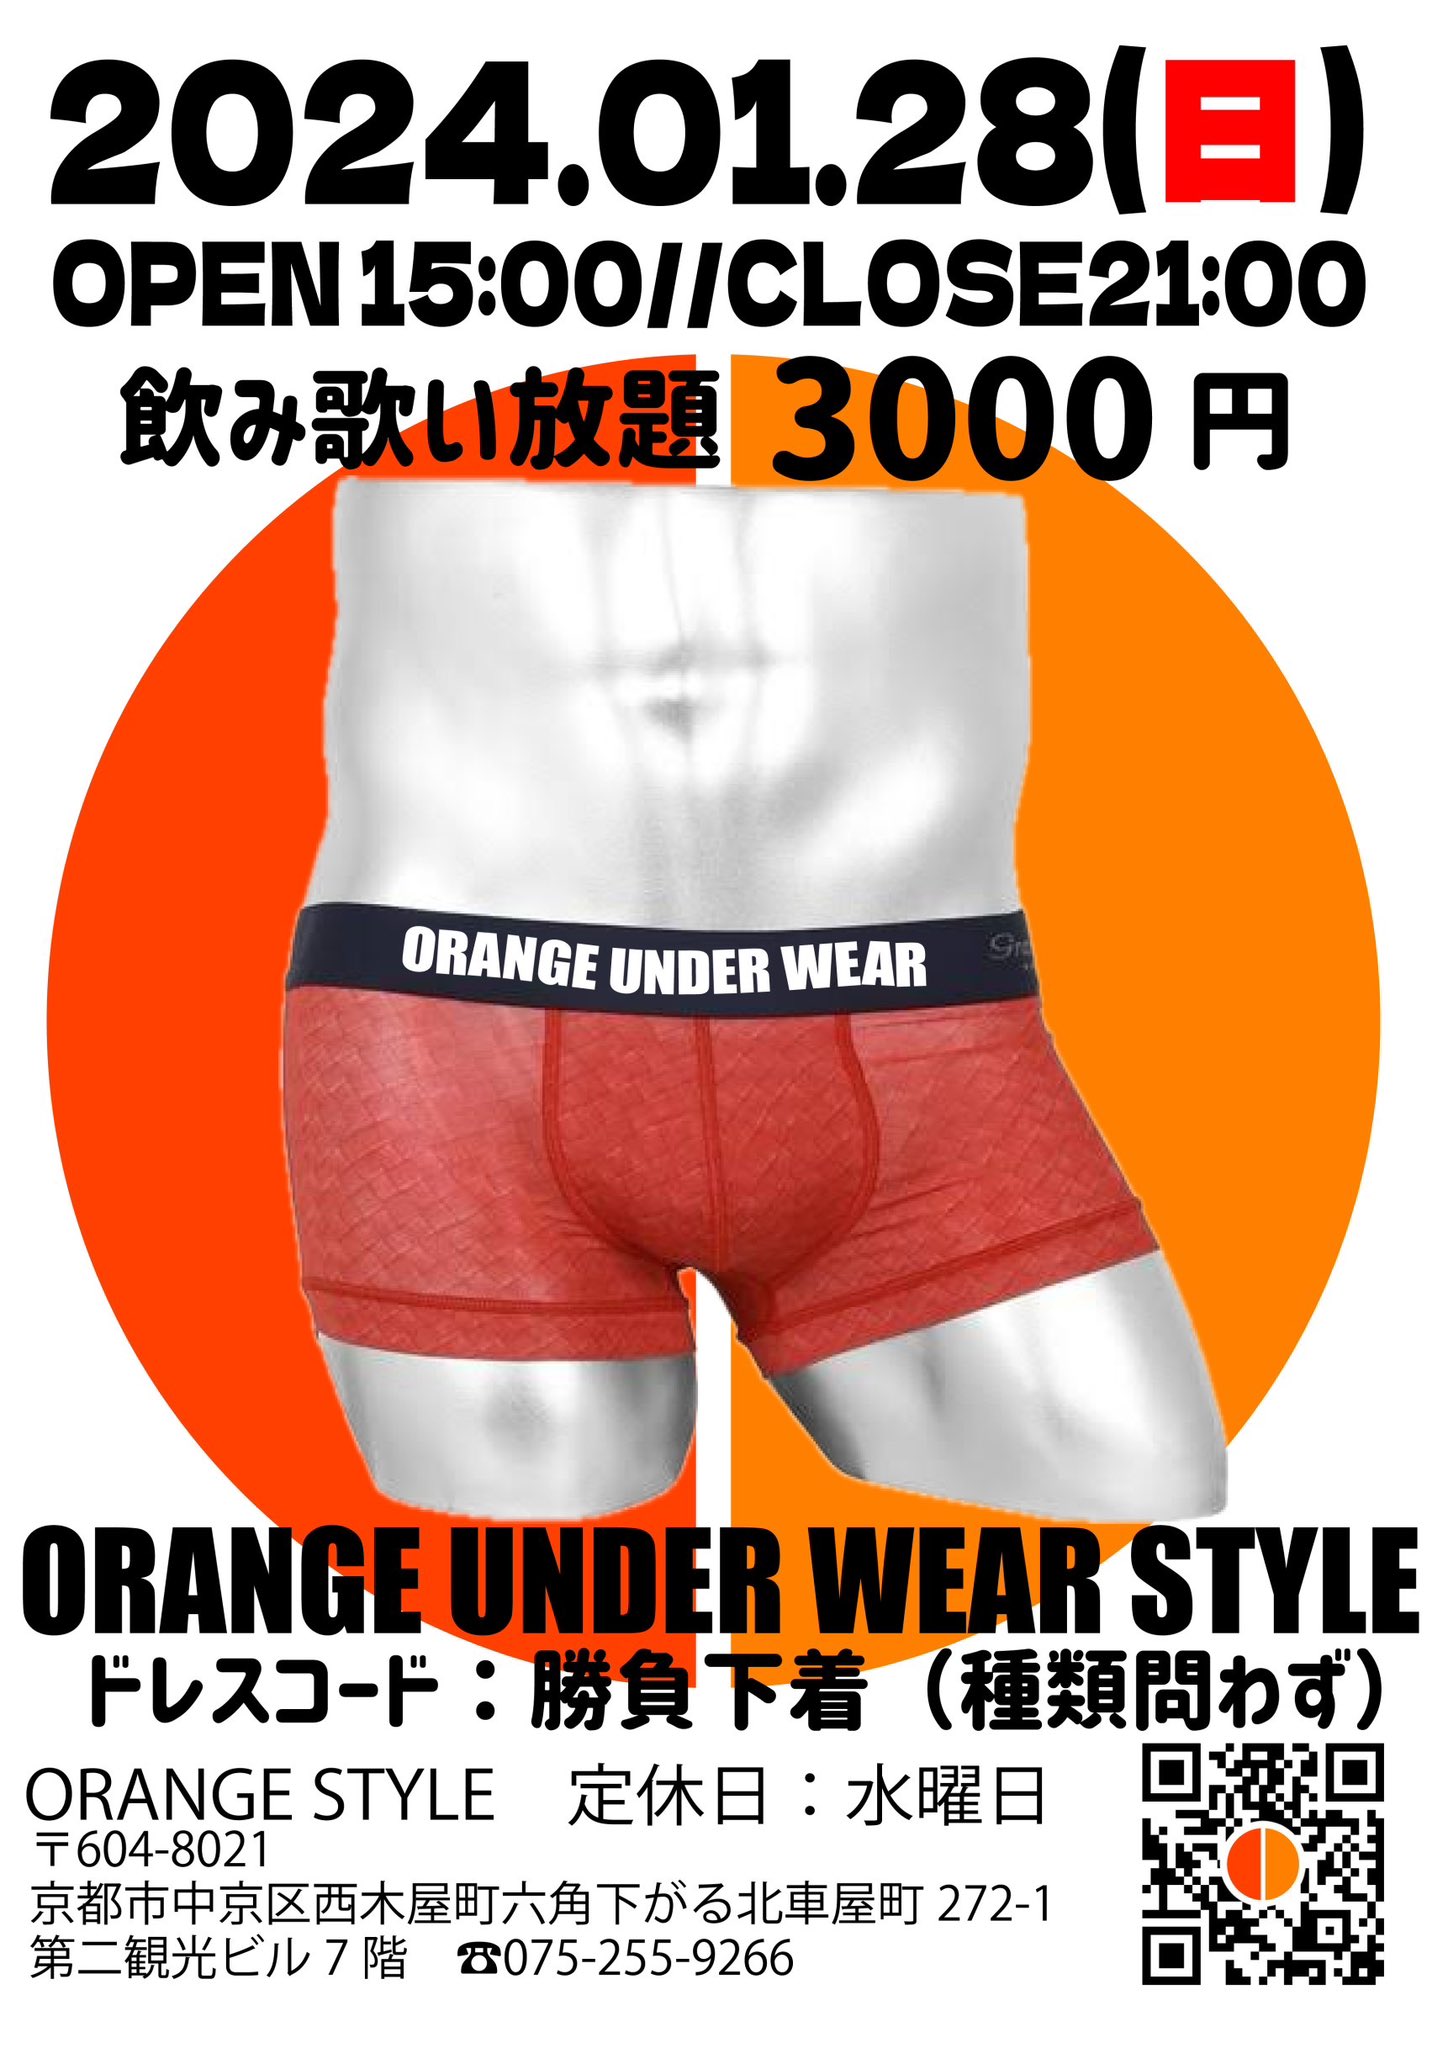 orange under wear style